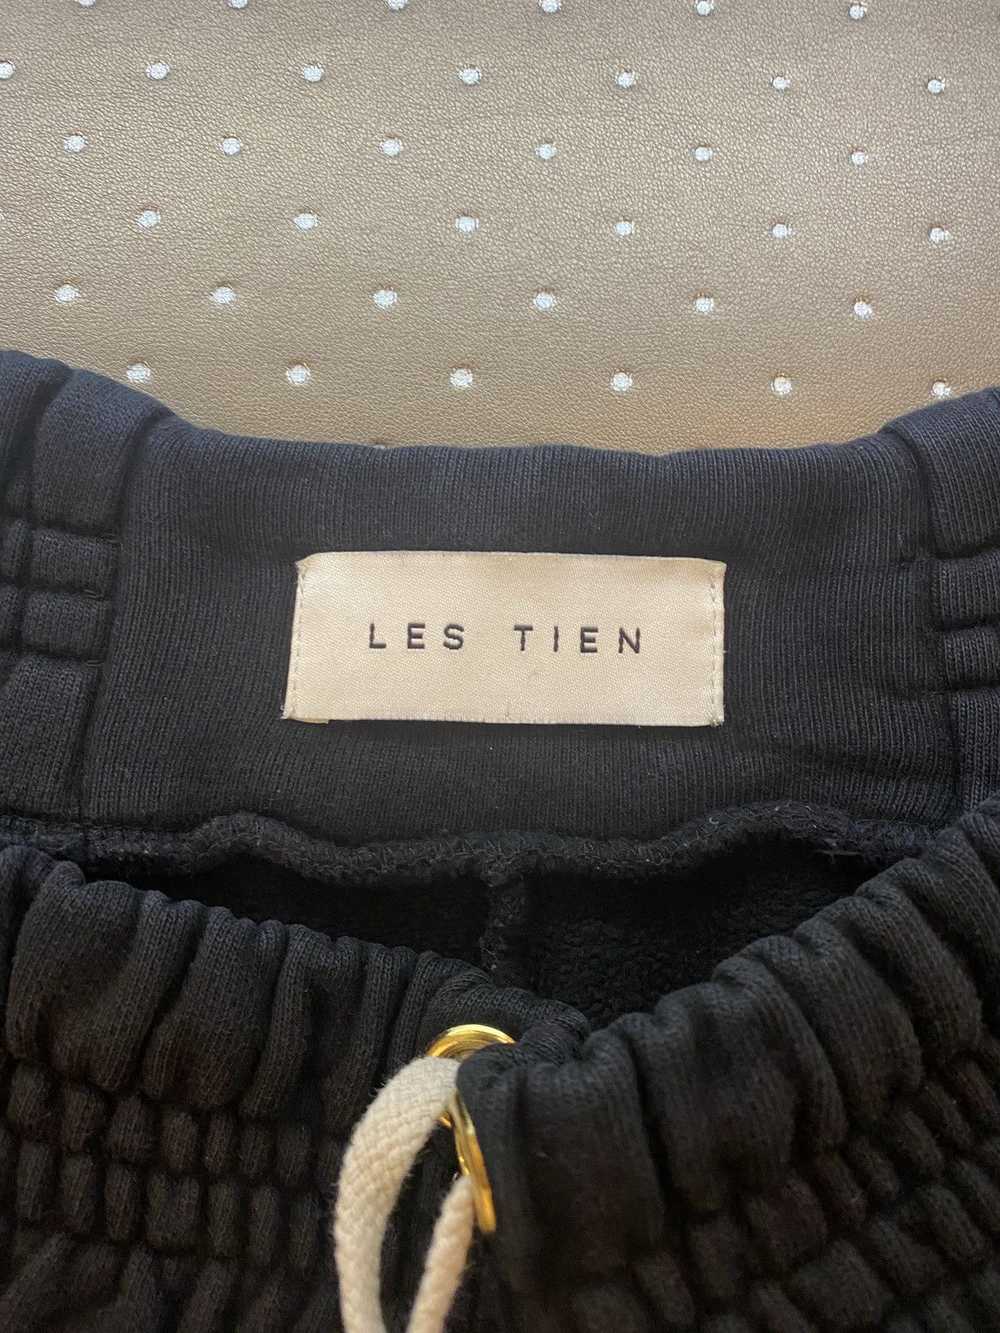 Les Tien Les Tien Yacht shorts - image 4